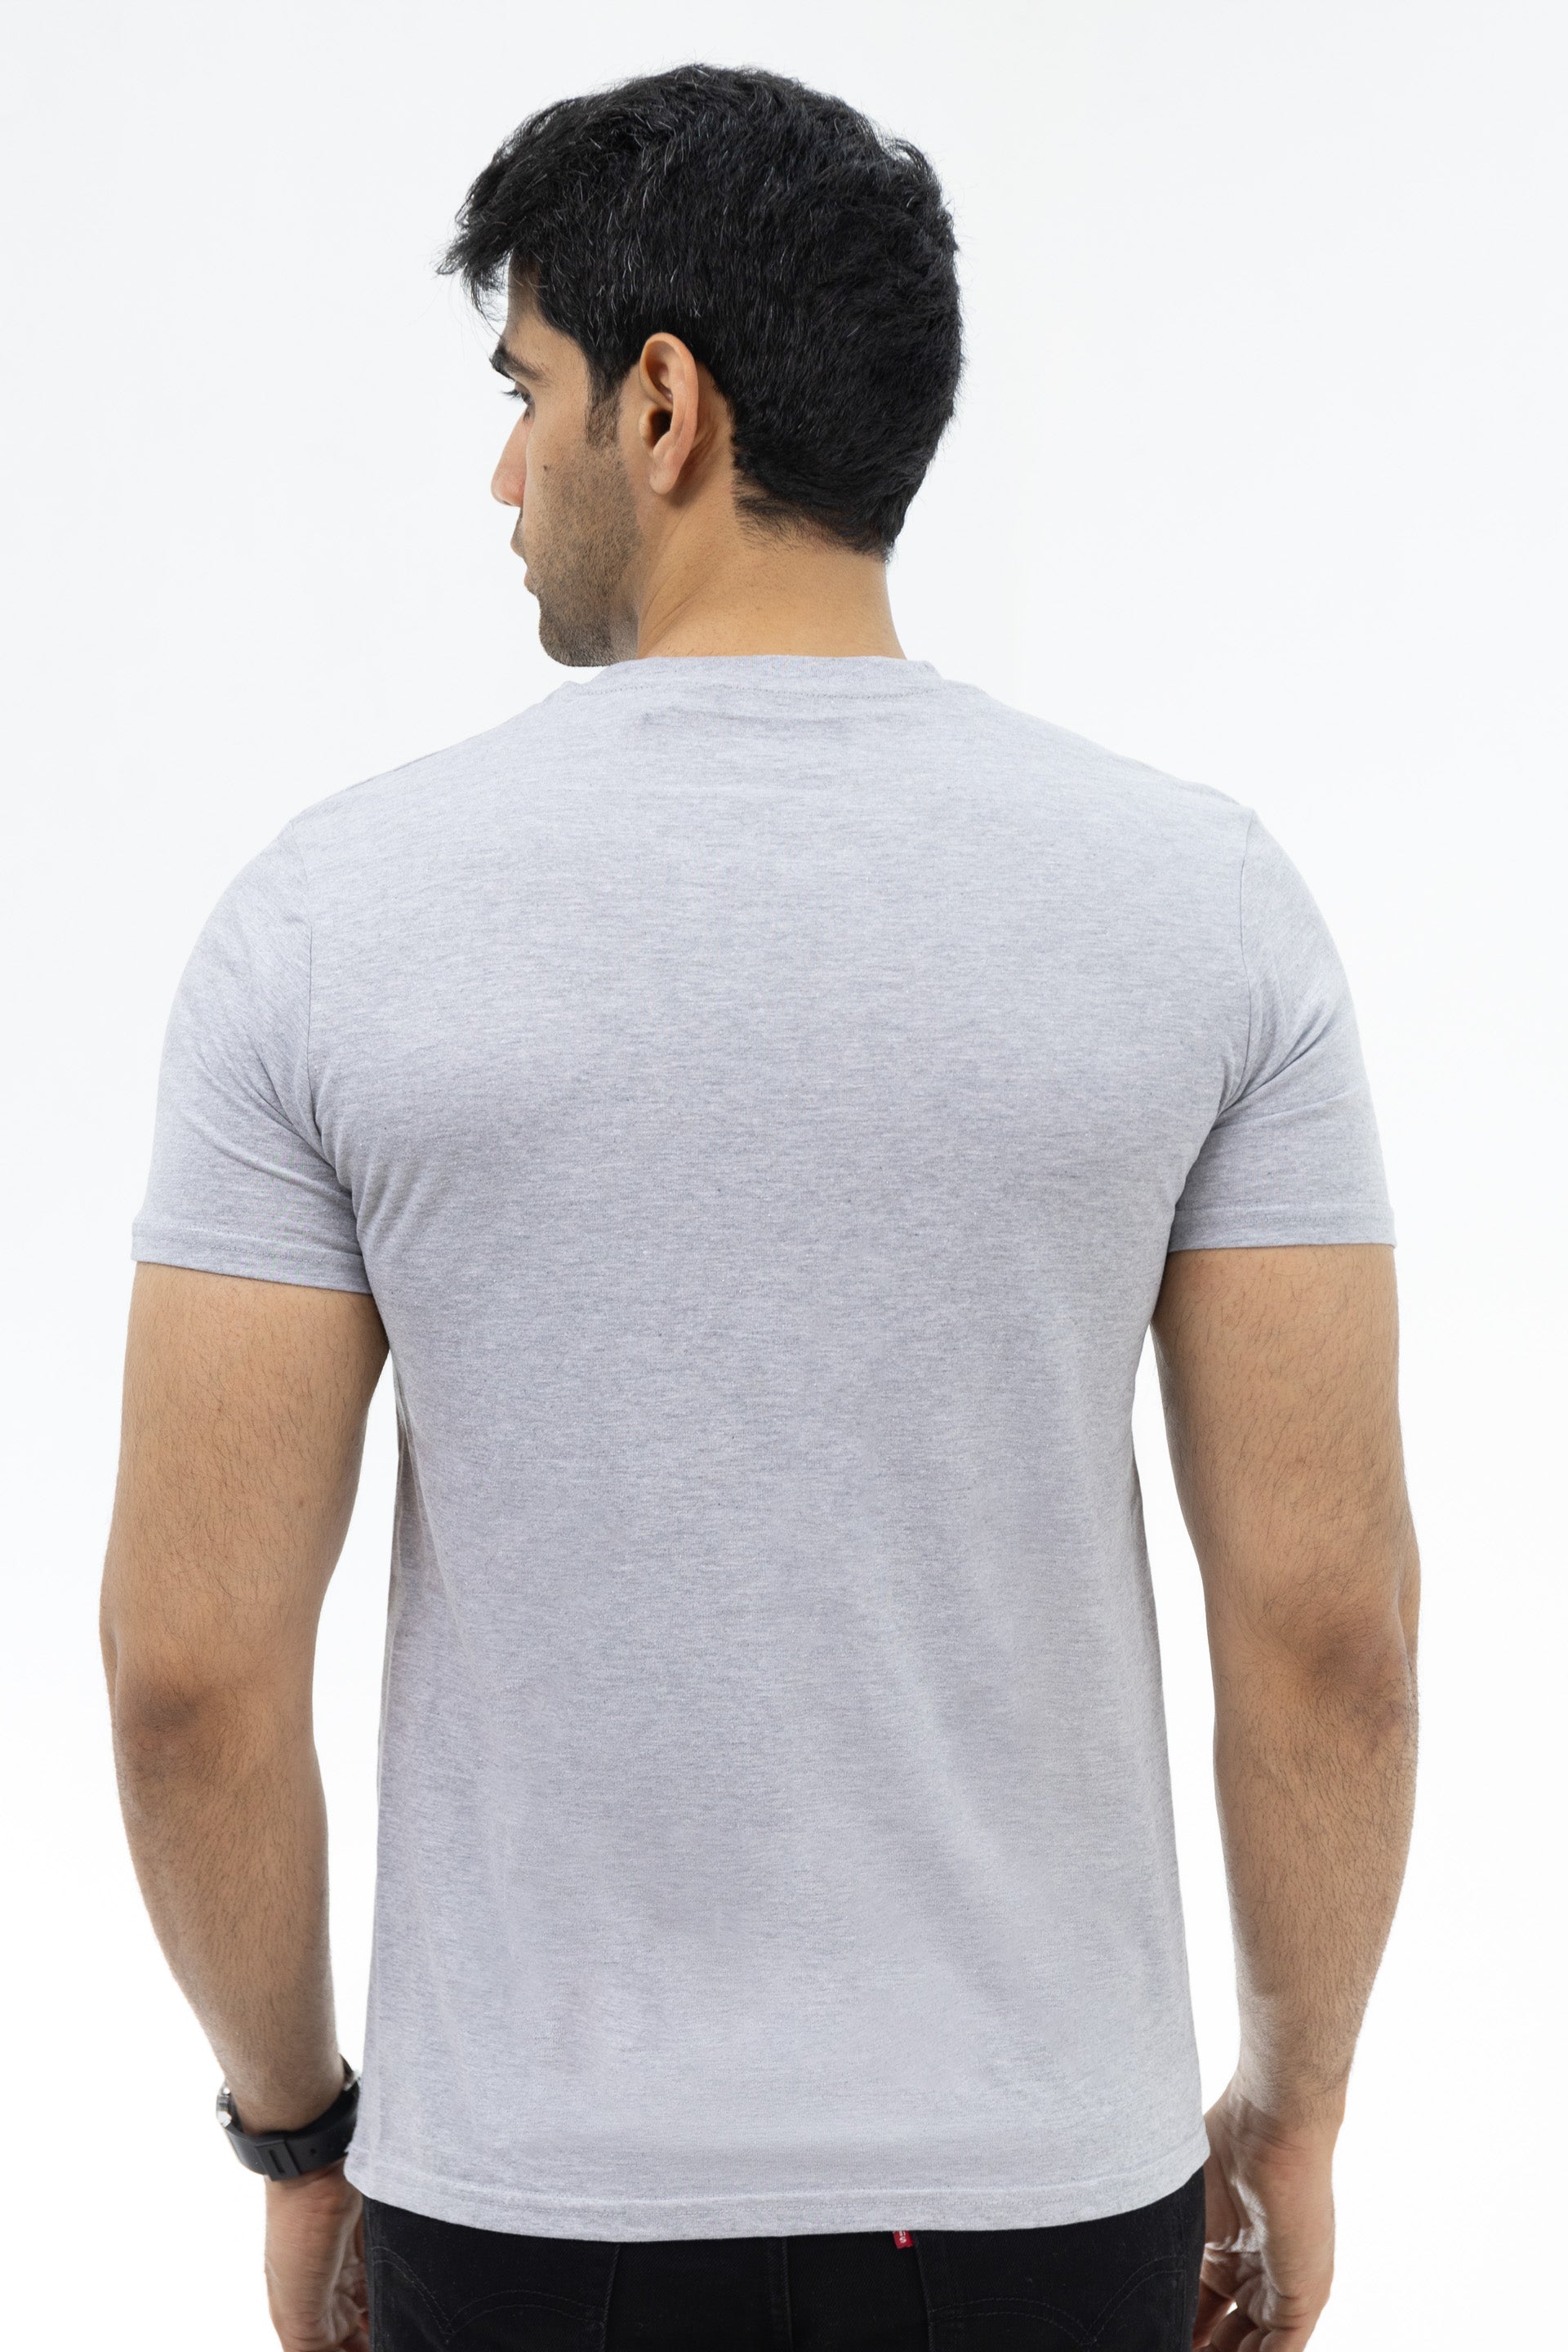 100% Cotton Round Neck T-Shirt